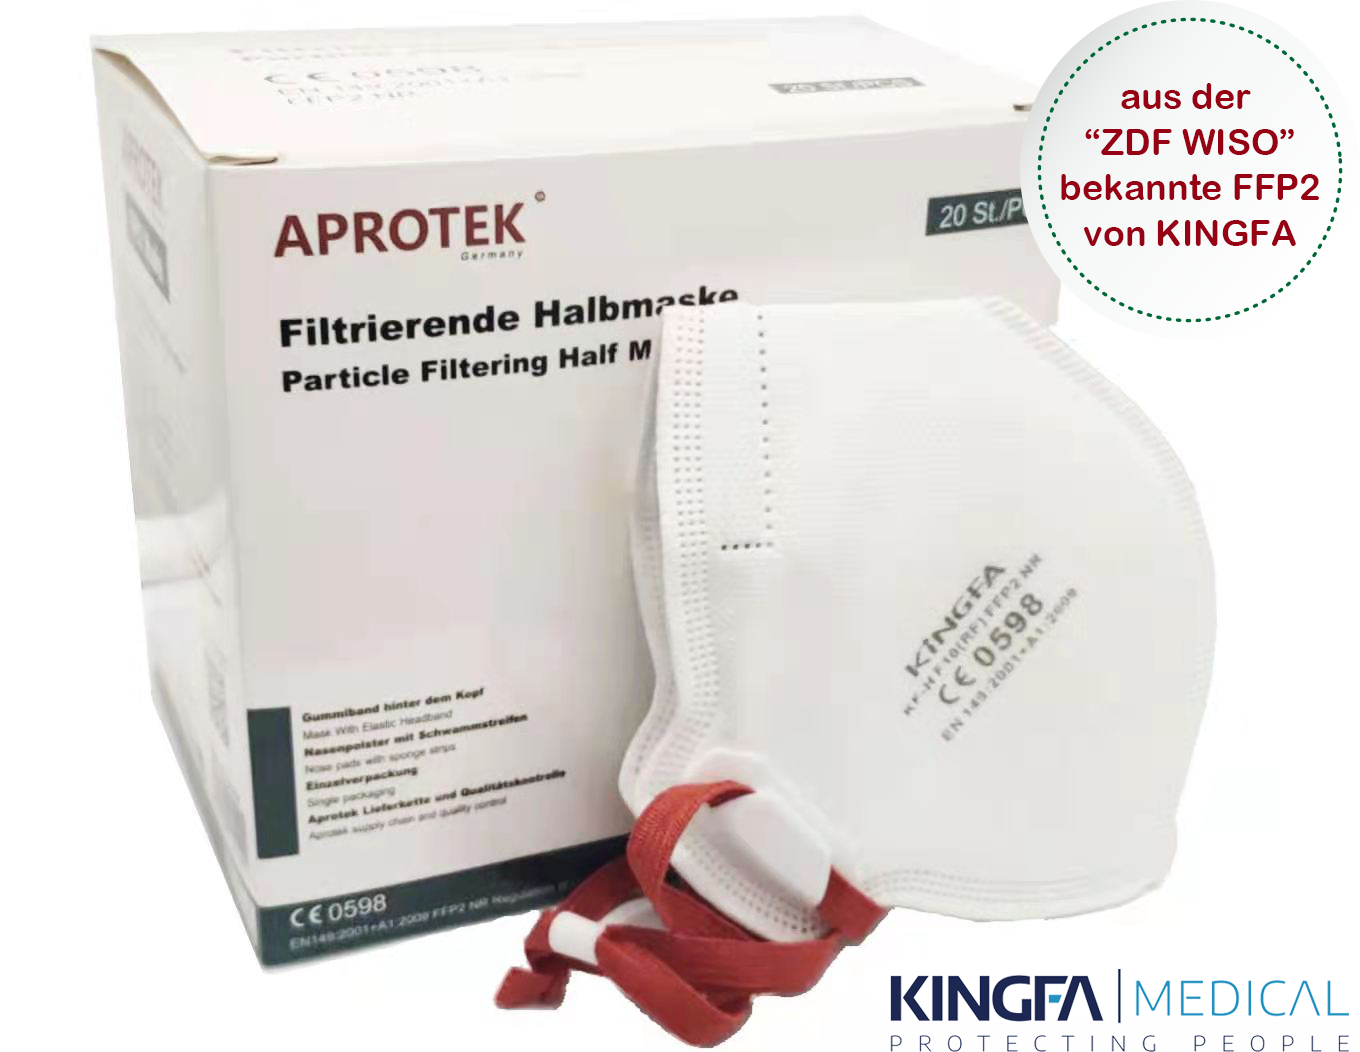  APROTEK ® KINGFA Profi FFP2 Atemschutzmaske CE 0598, 100Stück